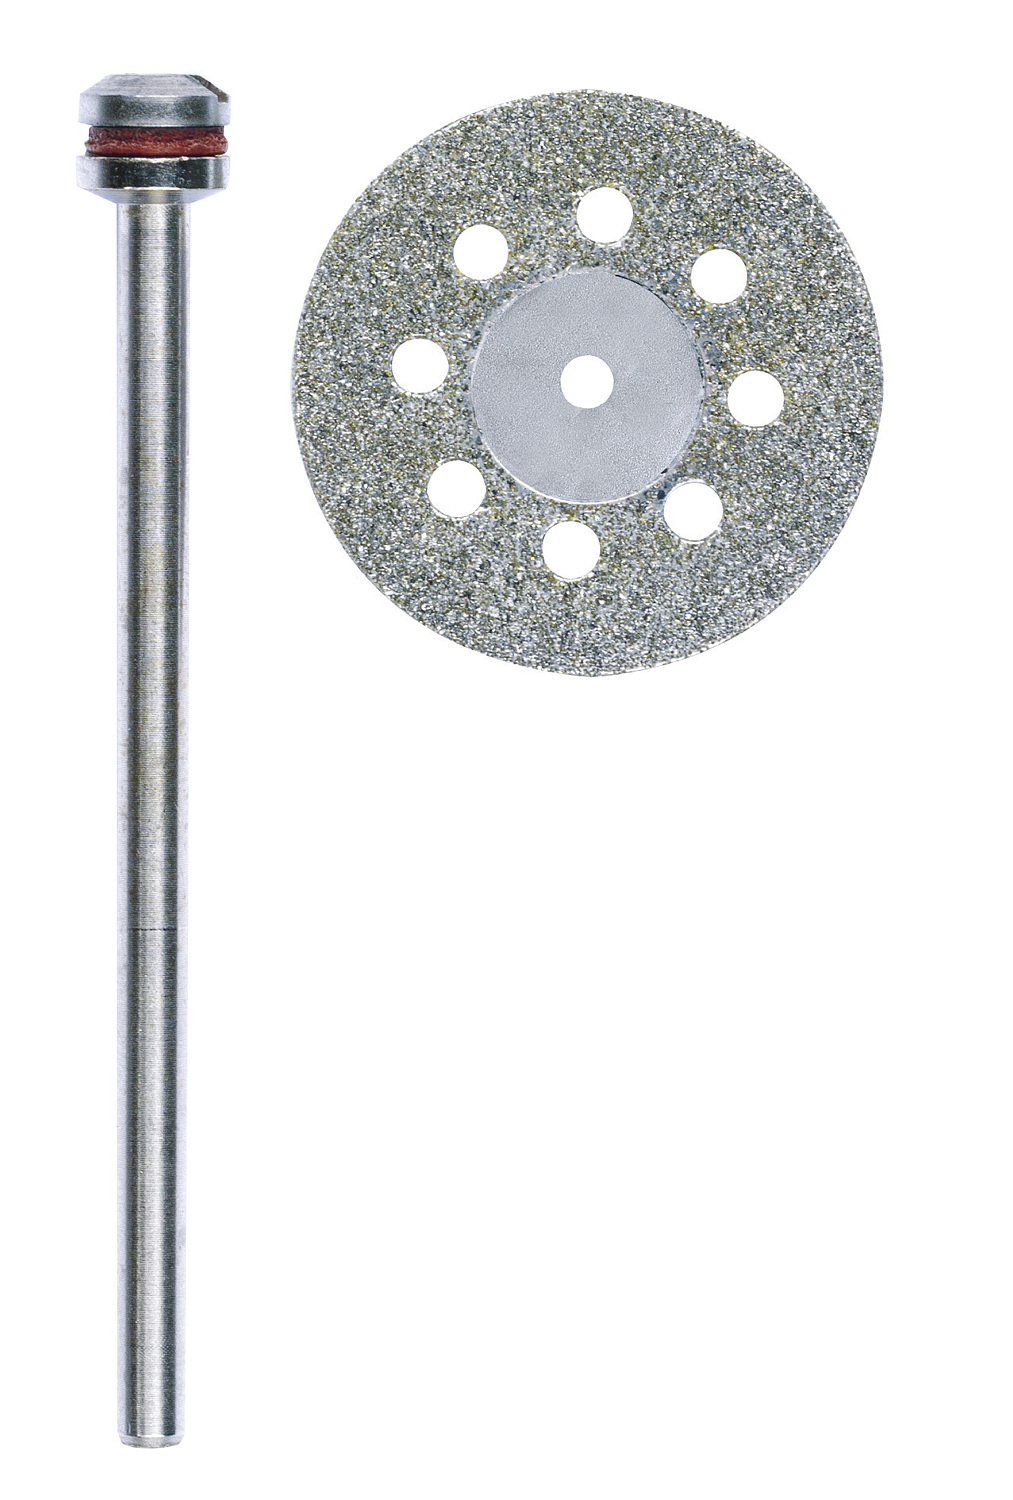 Diamantierte Trennscheibe mit Kühllöchern, Ø 20 mm + 1 Träger